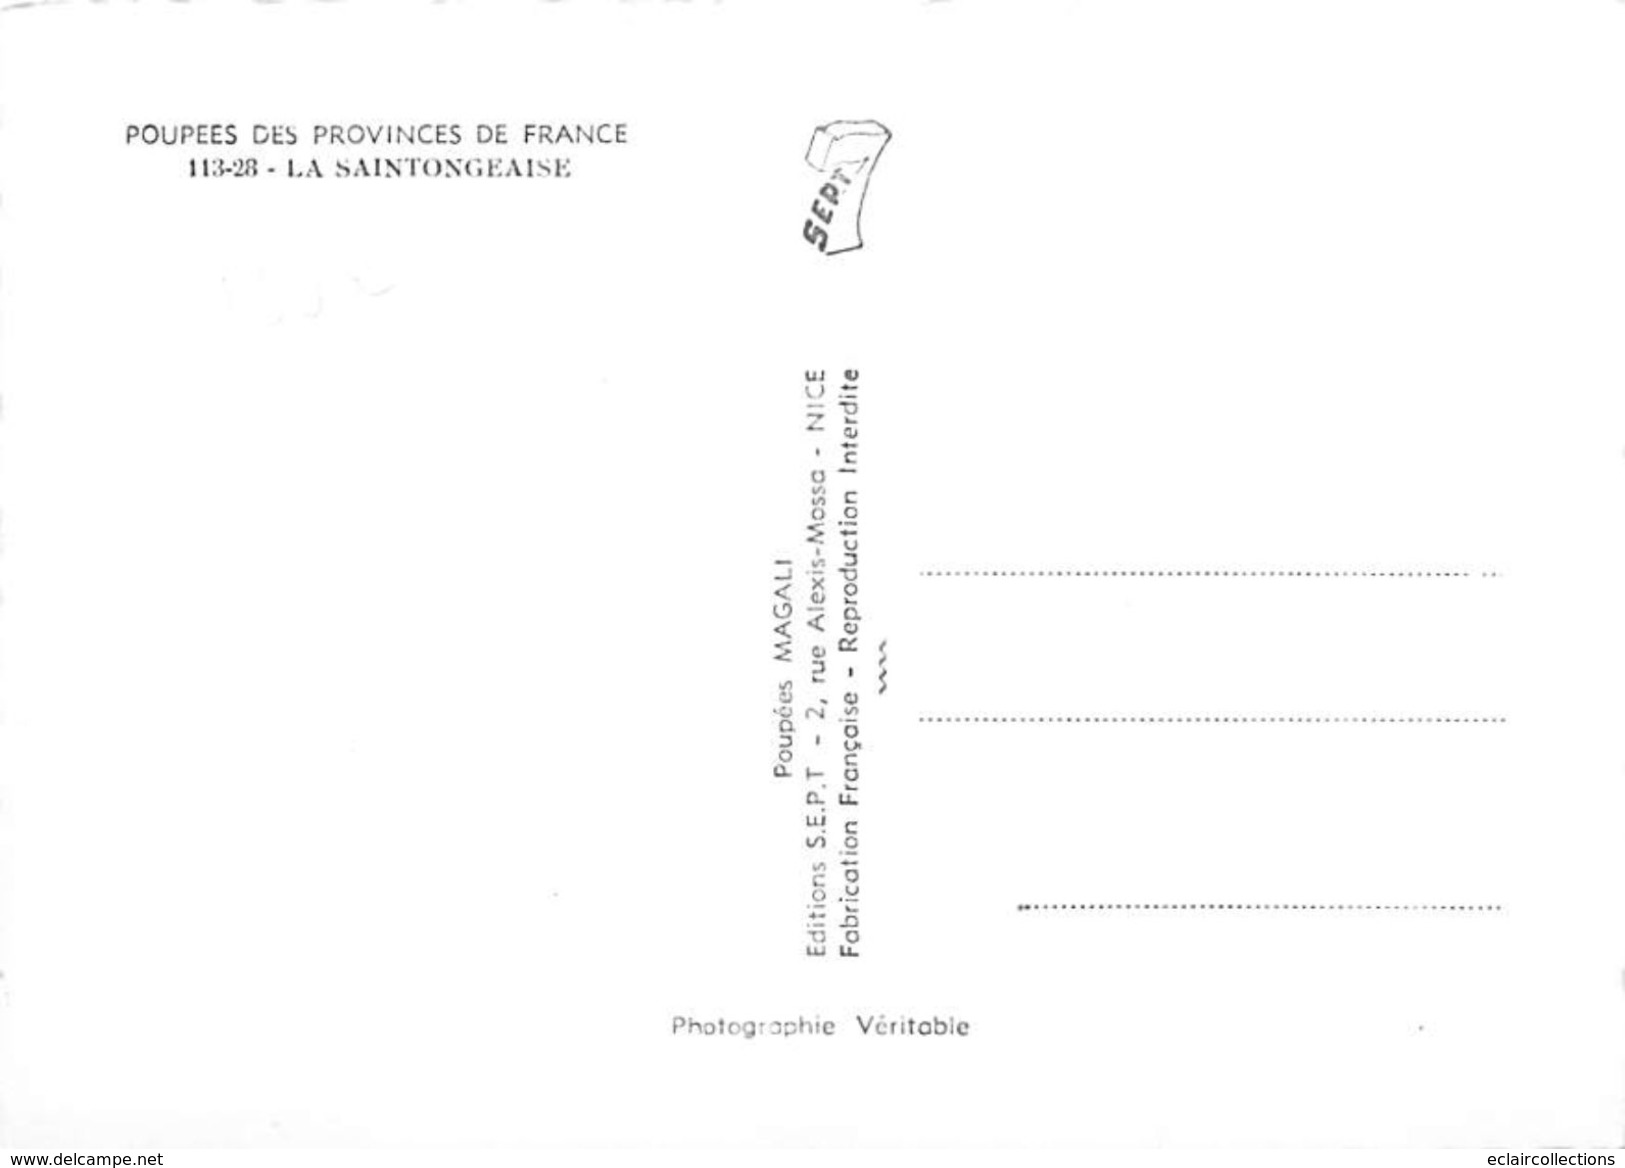 Thème: Poupées....1 lot de 15 Cartes  Poupées des province de France  Format 10 x15 toutes dos vierges   (voir scan)